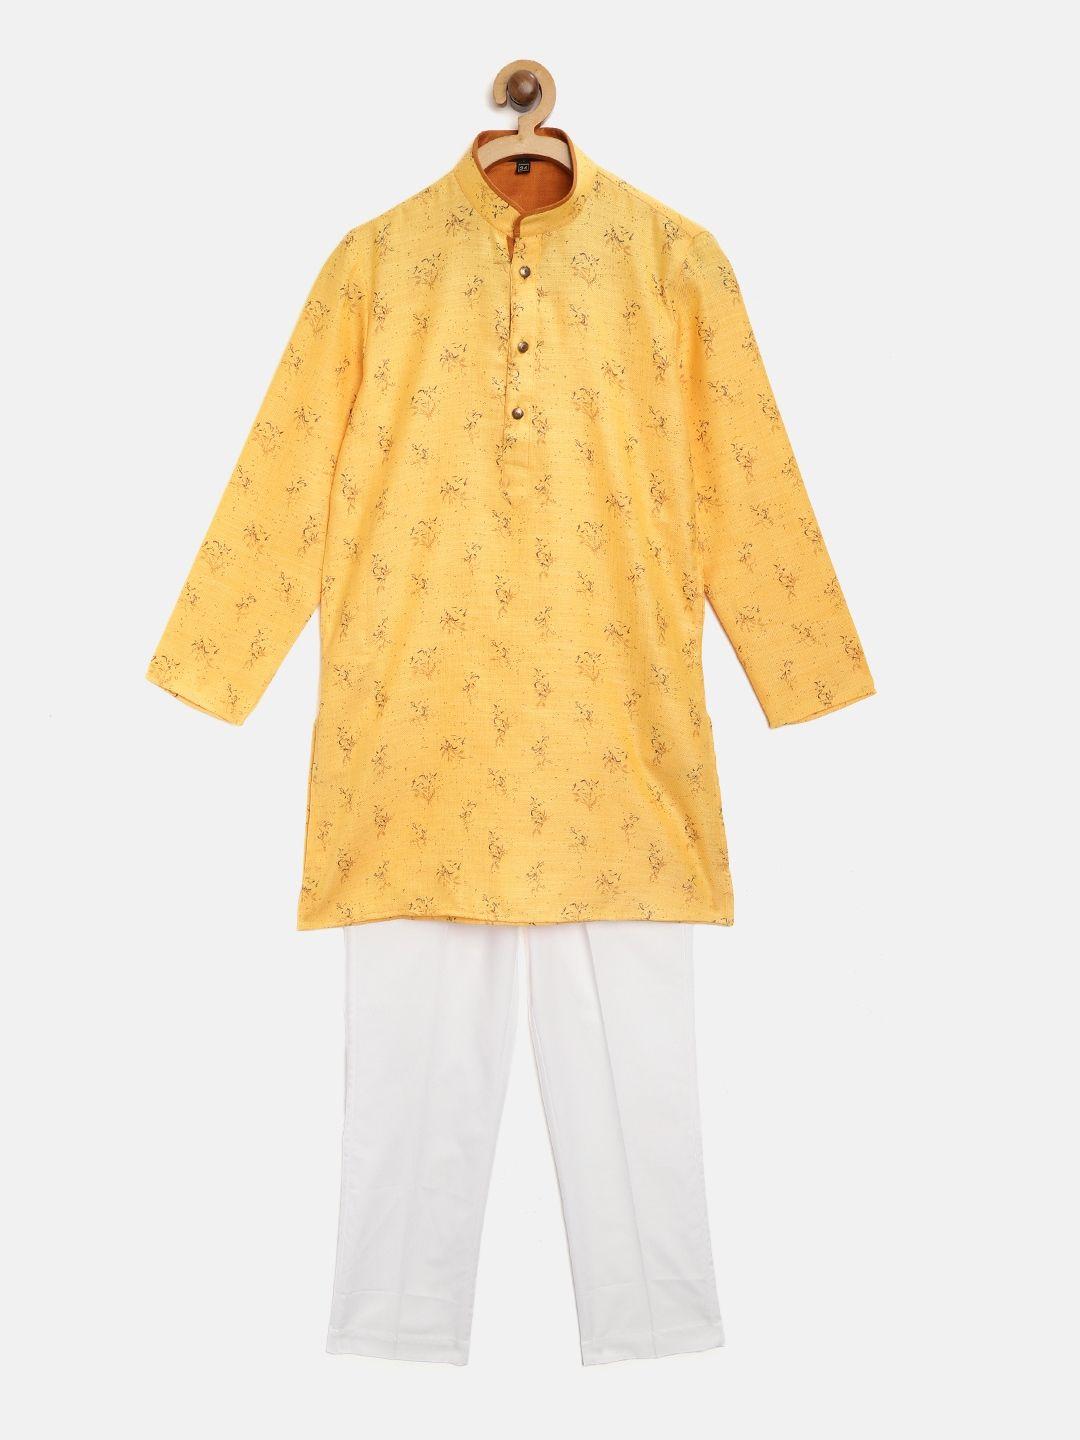 readiprint-fashions-boys-mustard-yellow-&-white-printed-kurta-with-pyjamas